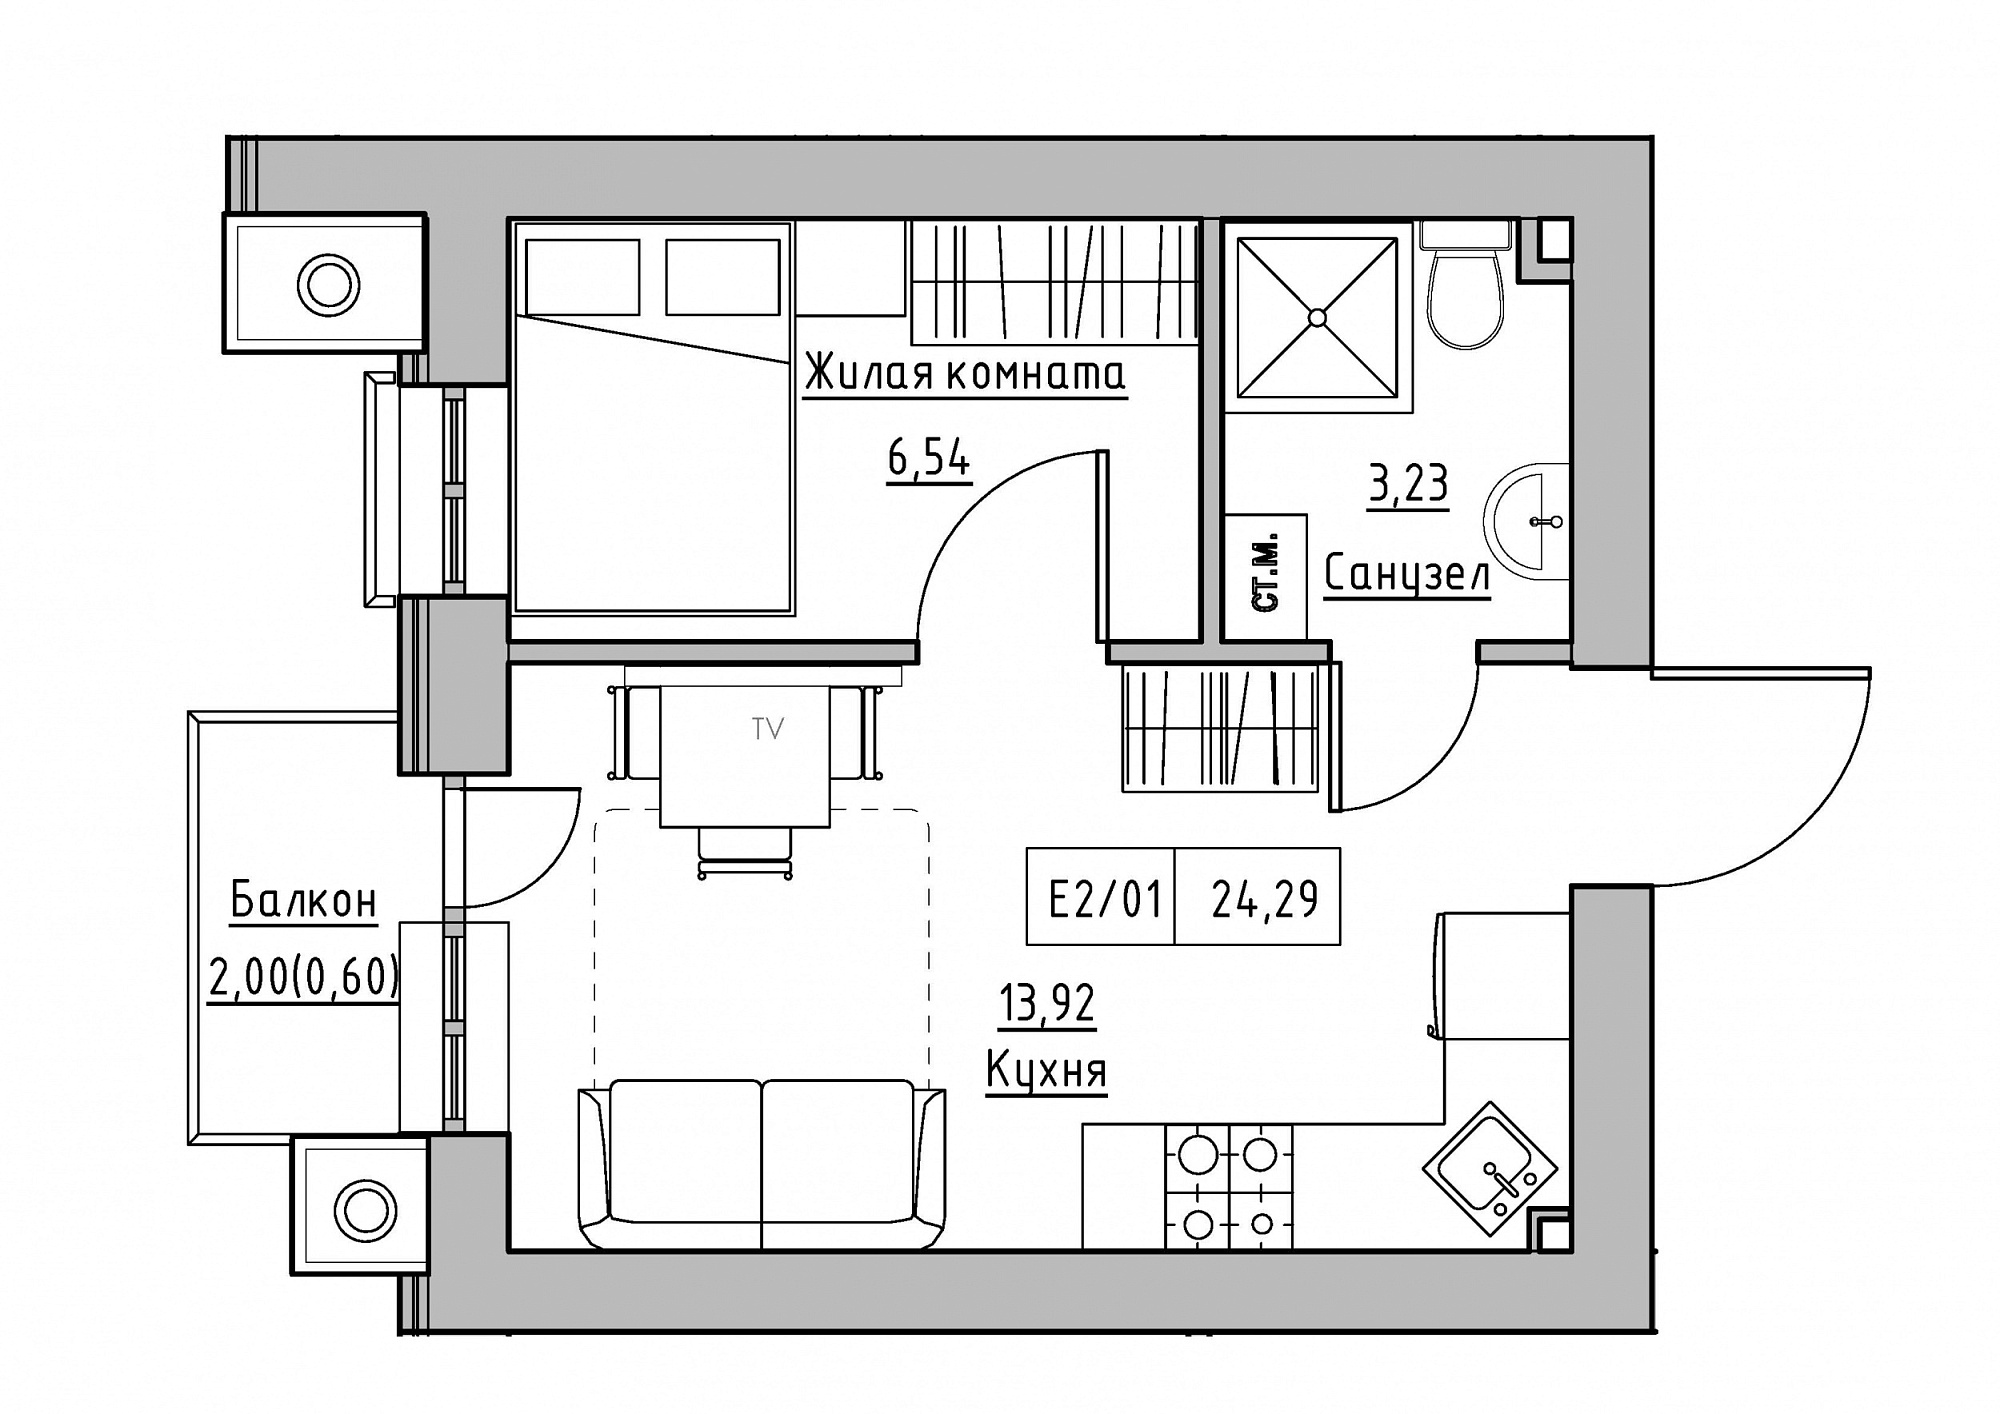 Планировка 1-к квартира площей 24.29м2, KS-012-03/0009.